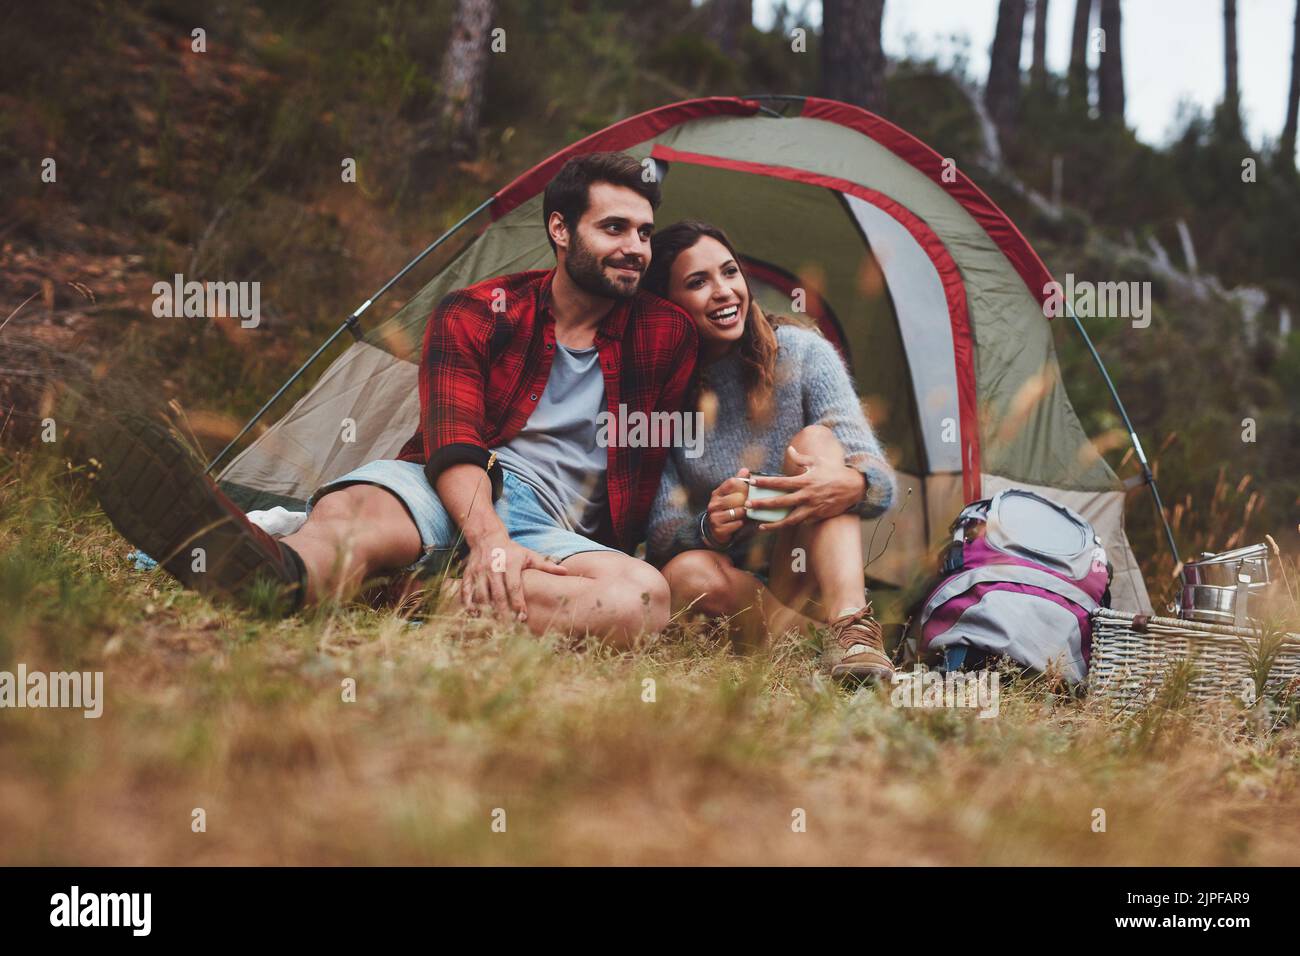 Un jeune couple heureux s'appréciant dans un camping. Jeune couple romantique assis à l'extérieur d'une tente de camping dans la forêt. Banque D'Images